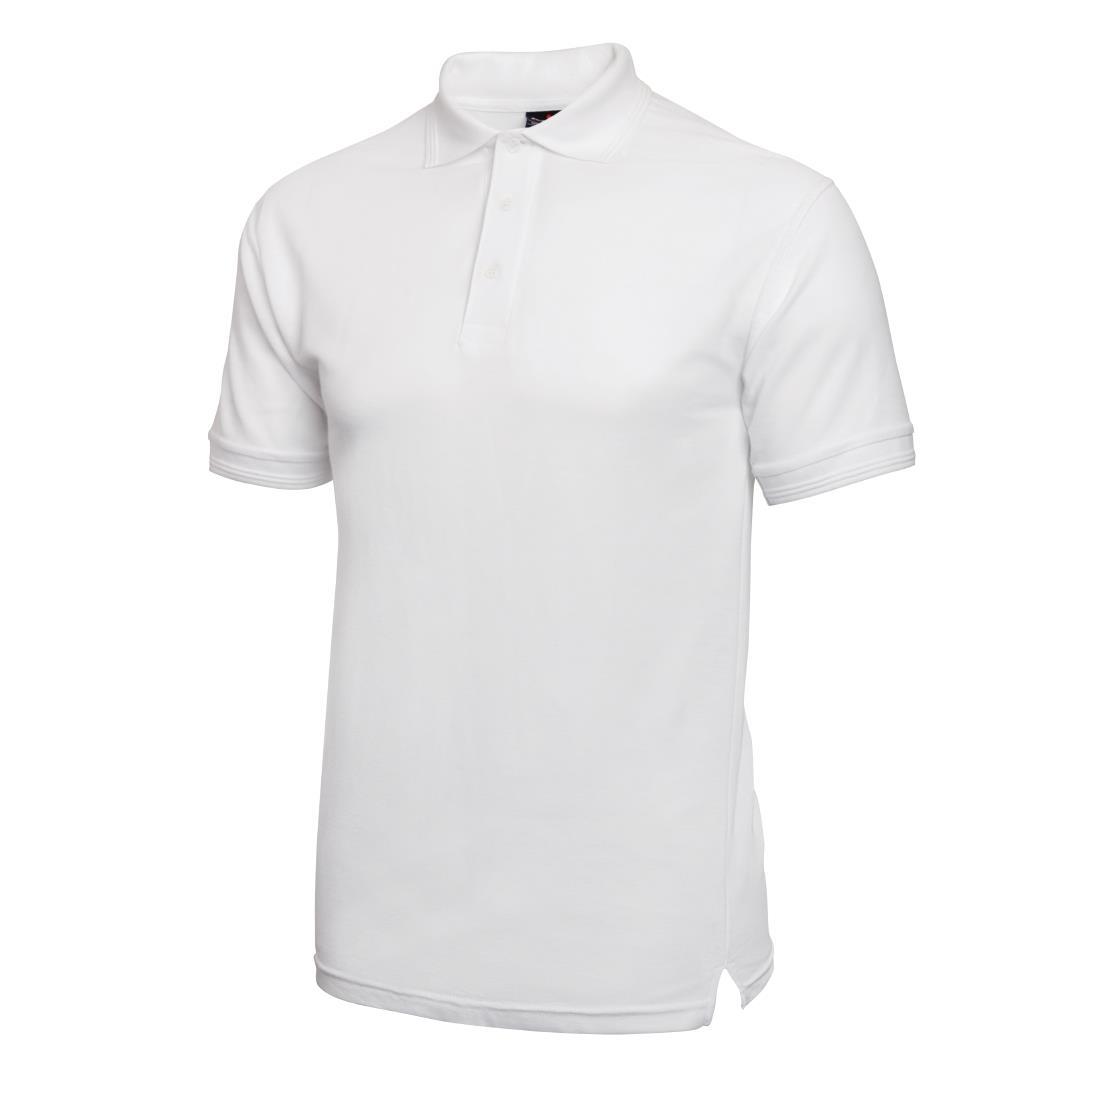 Unisex Polo Shirt White M - A734-M  - 2